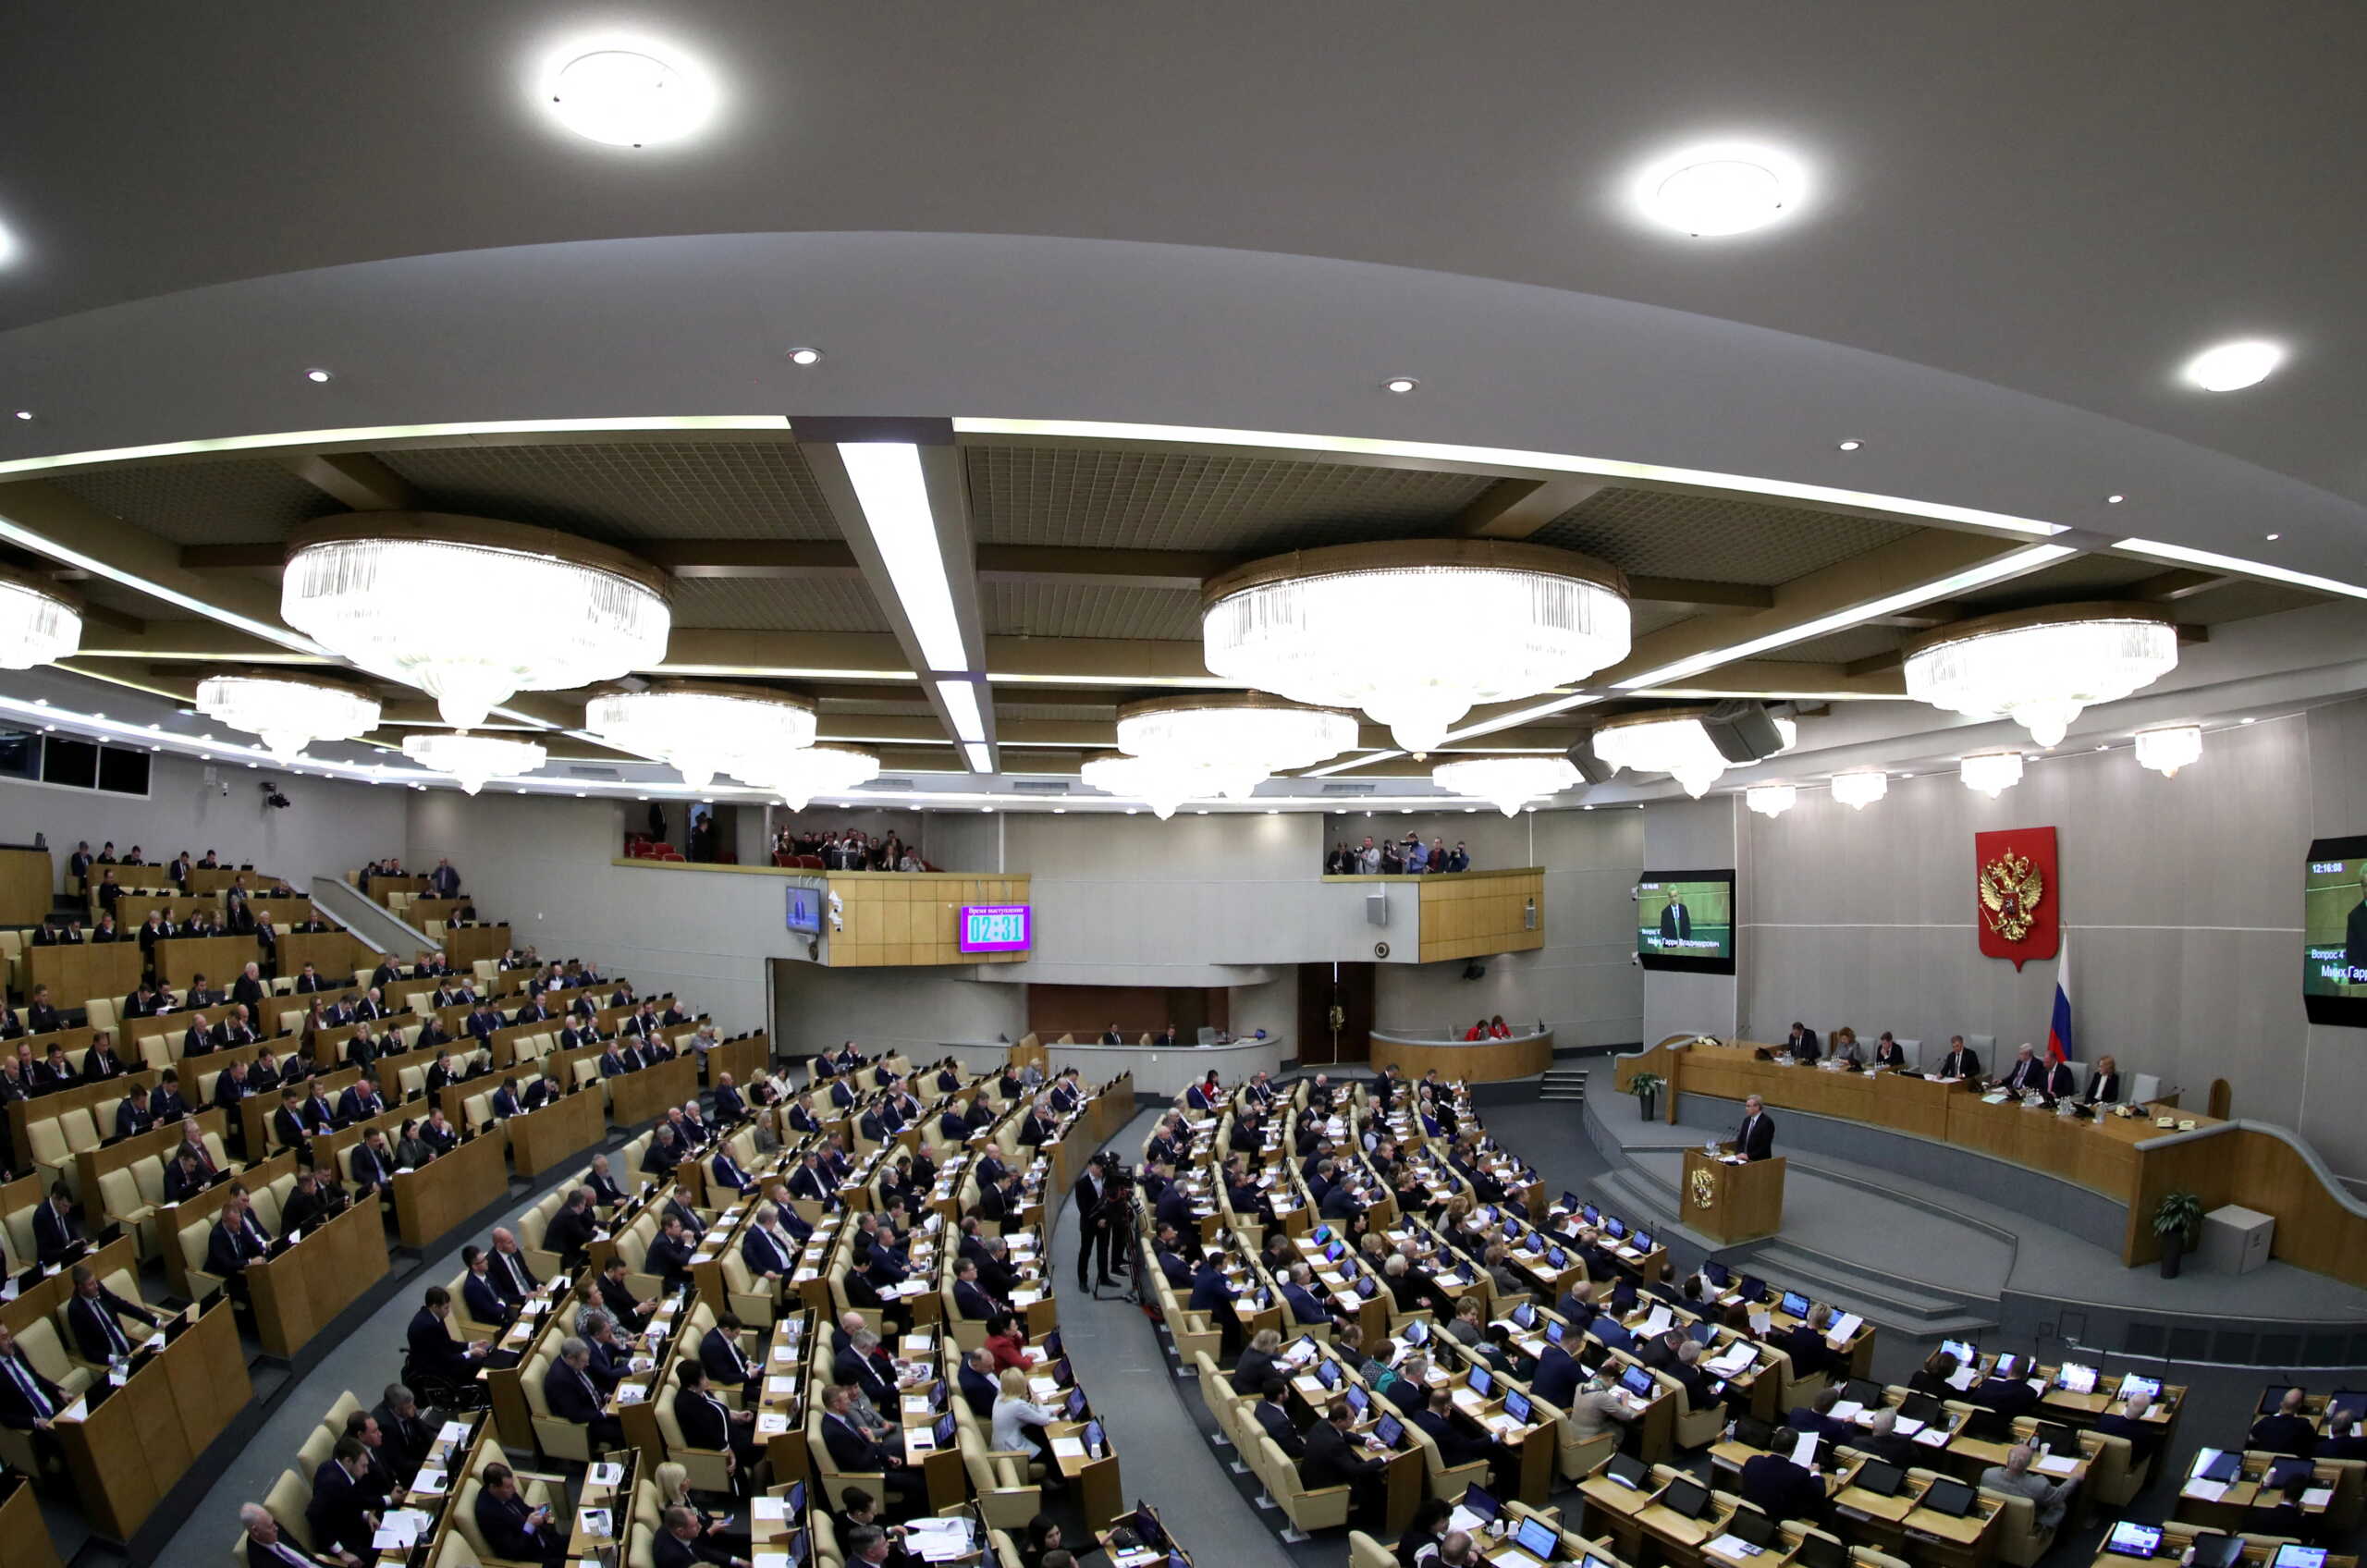 Ρωσία: Η Δούμα ψήφισε υπέρ της λογοκρισίας της άσκησης κριτικής σε μισθοφορικές οργανώσεις